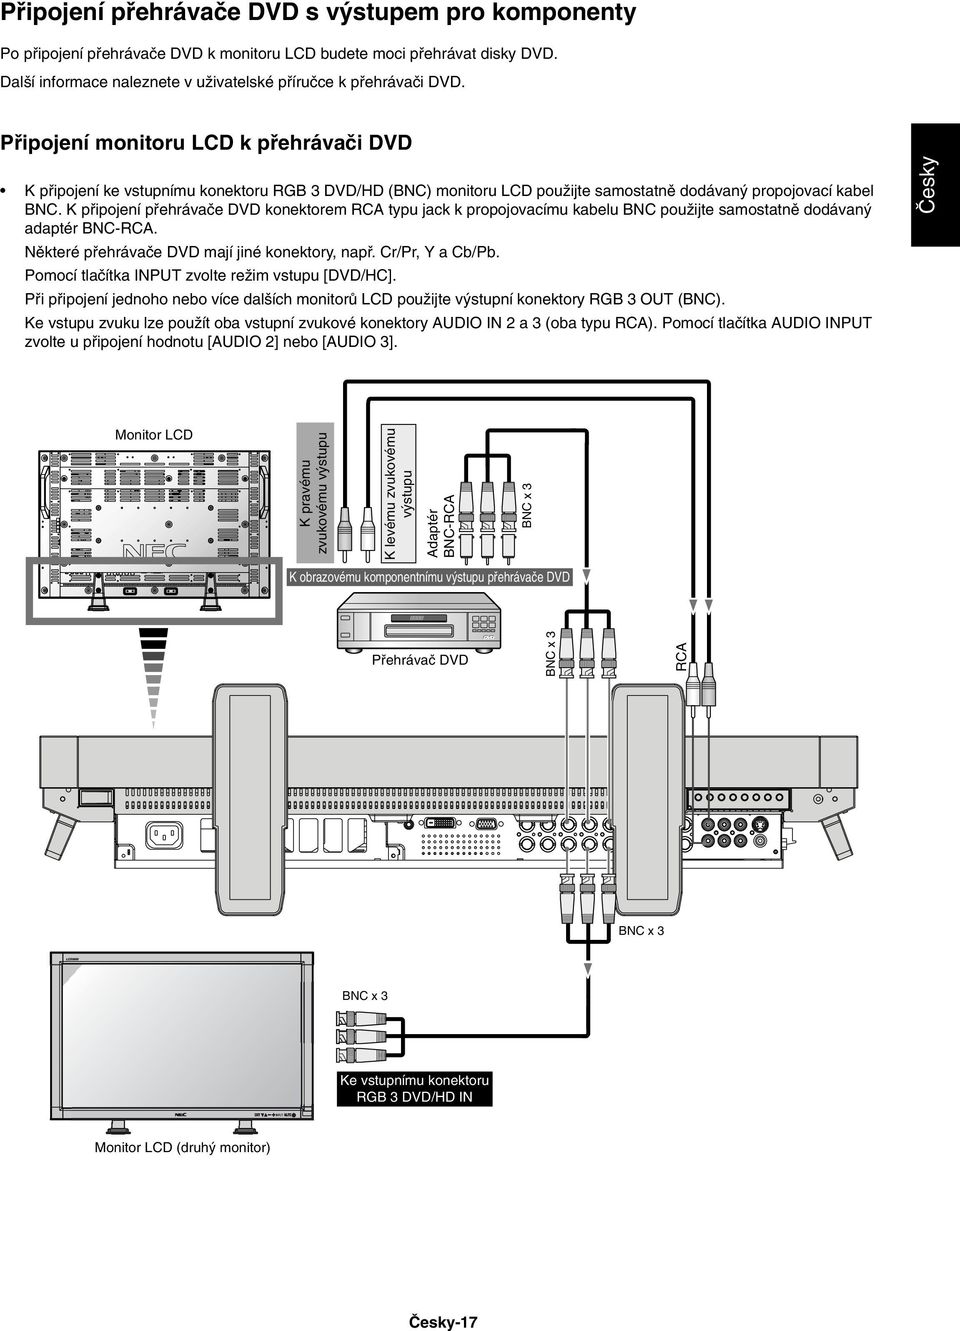 K pfiipojení pfiehrávaãe DVD konektorem RCA typu jack k propojovacímu kabelu BNC pouïijte samostatnû dodávan adaptér BNCRCA. Nûkteré pfiehrávaãe DVD mají jiné konektory, napfi. Cr/Pr, Y a Cb/Pb.